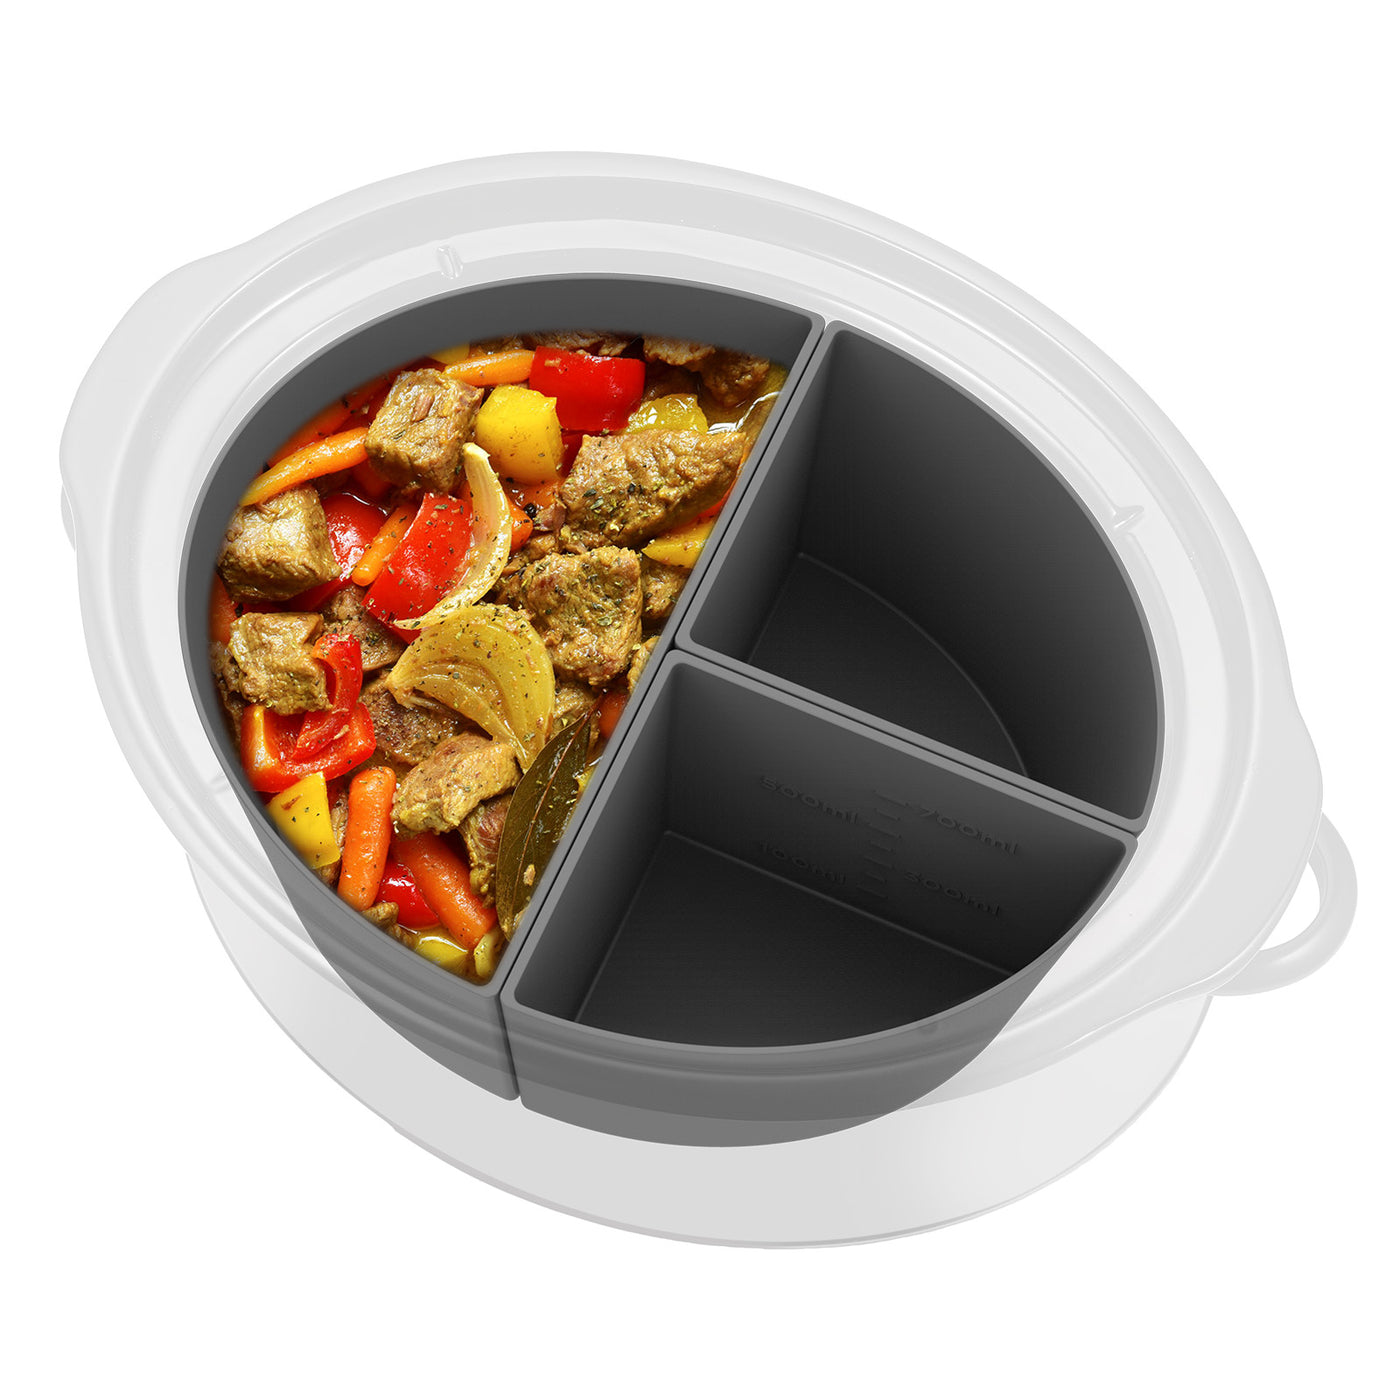 OUTXE Slow Cooker Divider Liner fit 6 QT Crockpot, Reusable & Leakproof Silicone Crockpot Divider, Dishwasher Safe Cooking Liner for 6 Quart Pot (Grey)